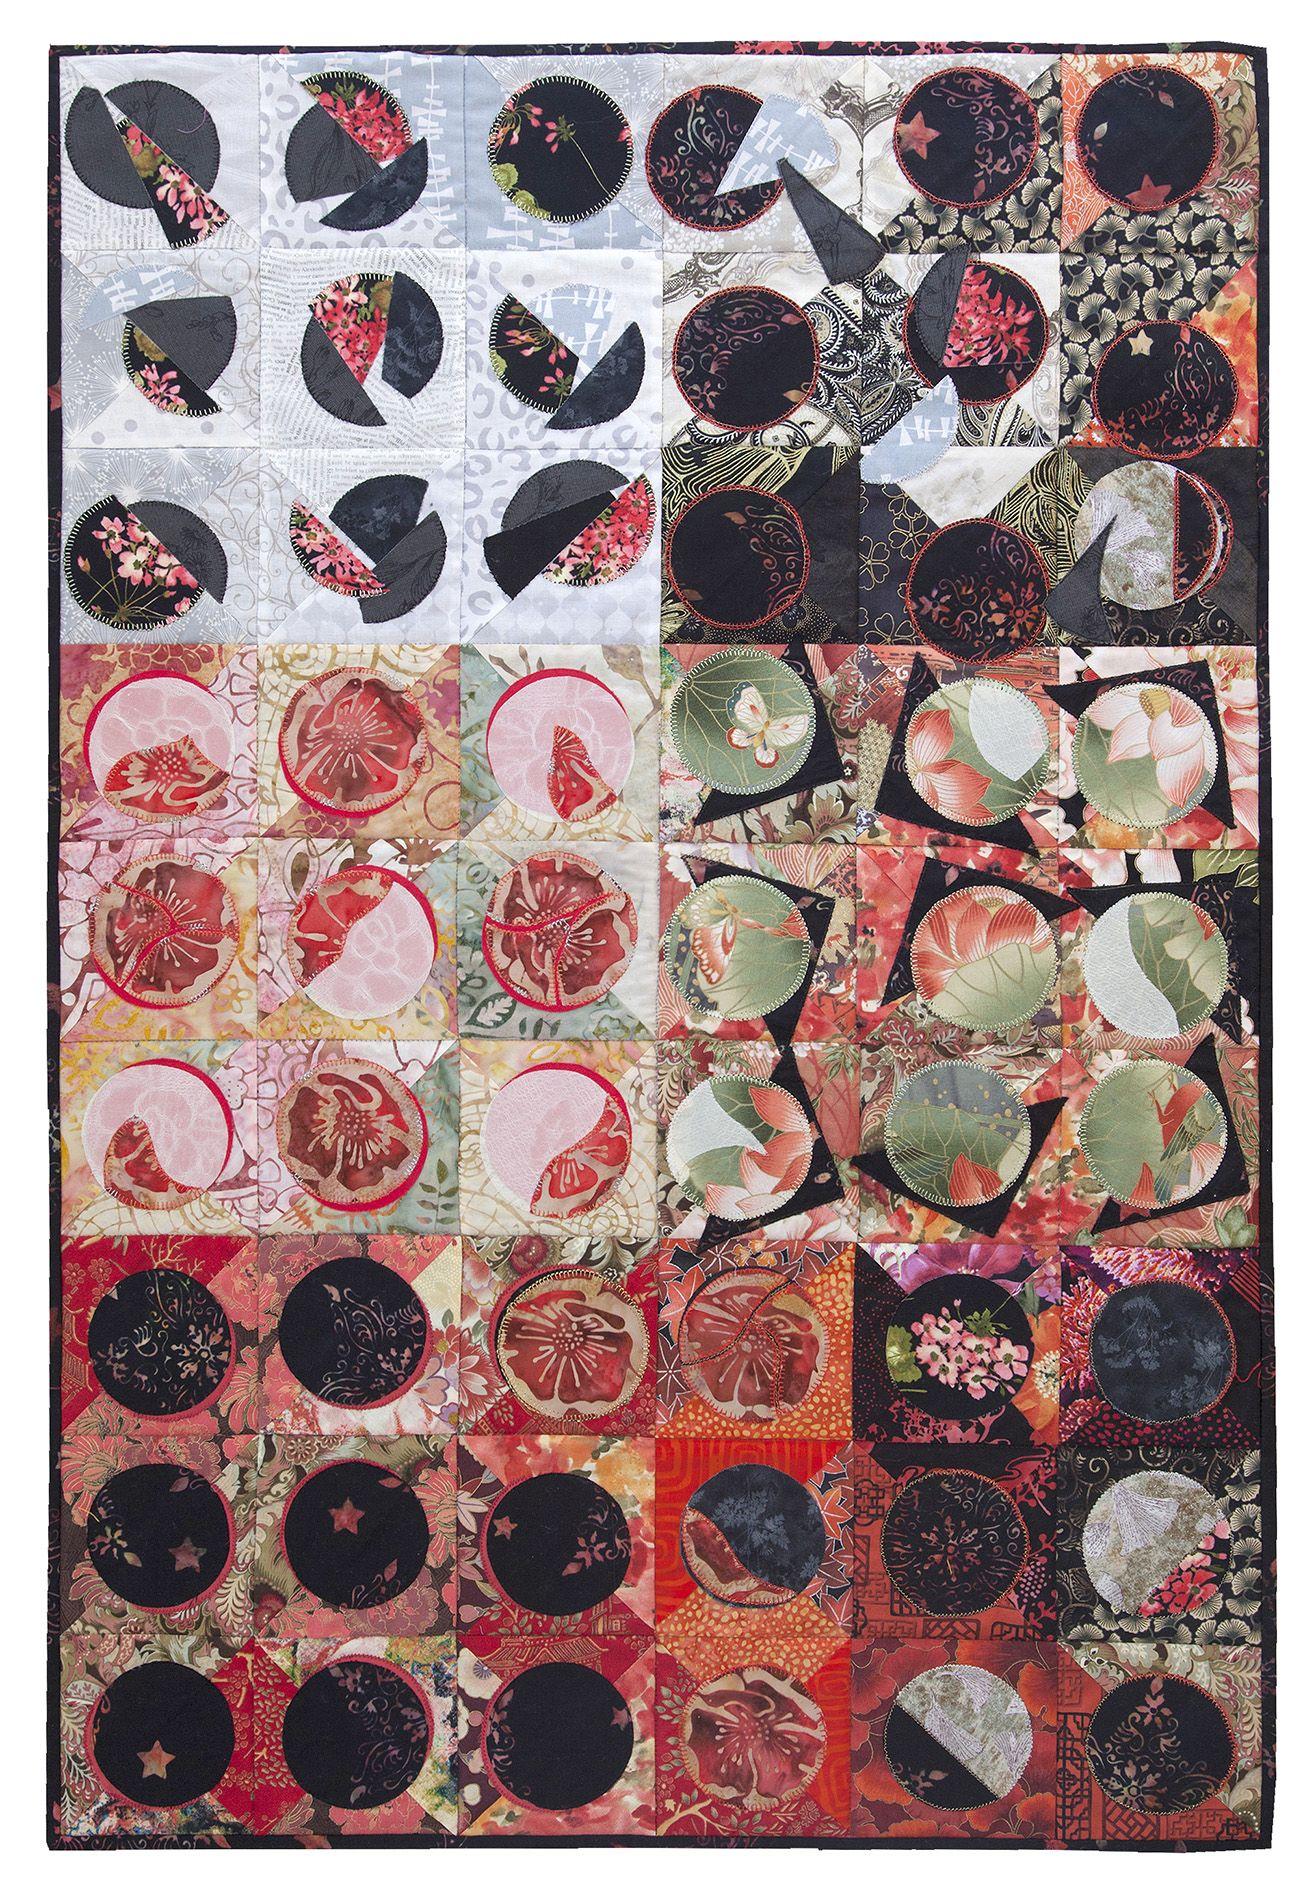 Diana M. Bailey - Fragmenting Circles